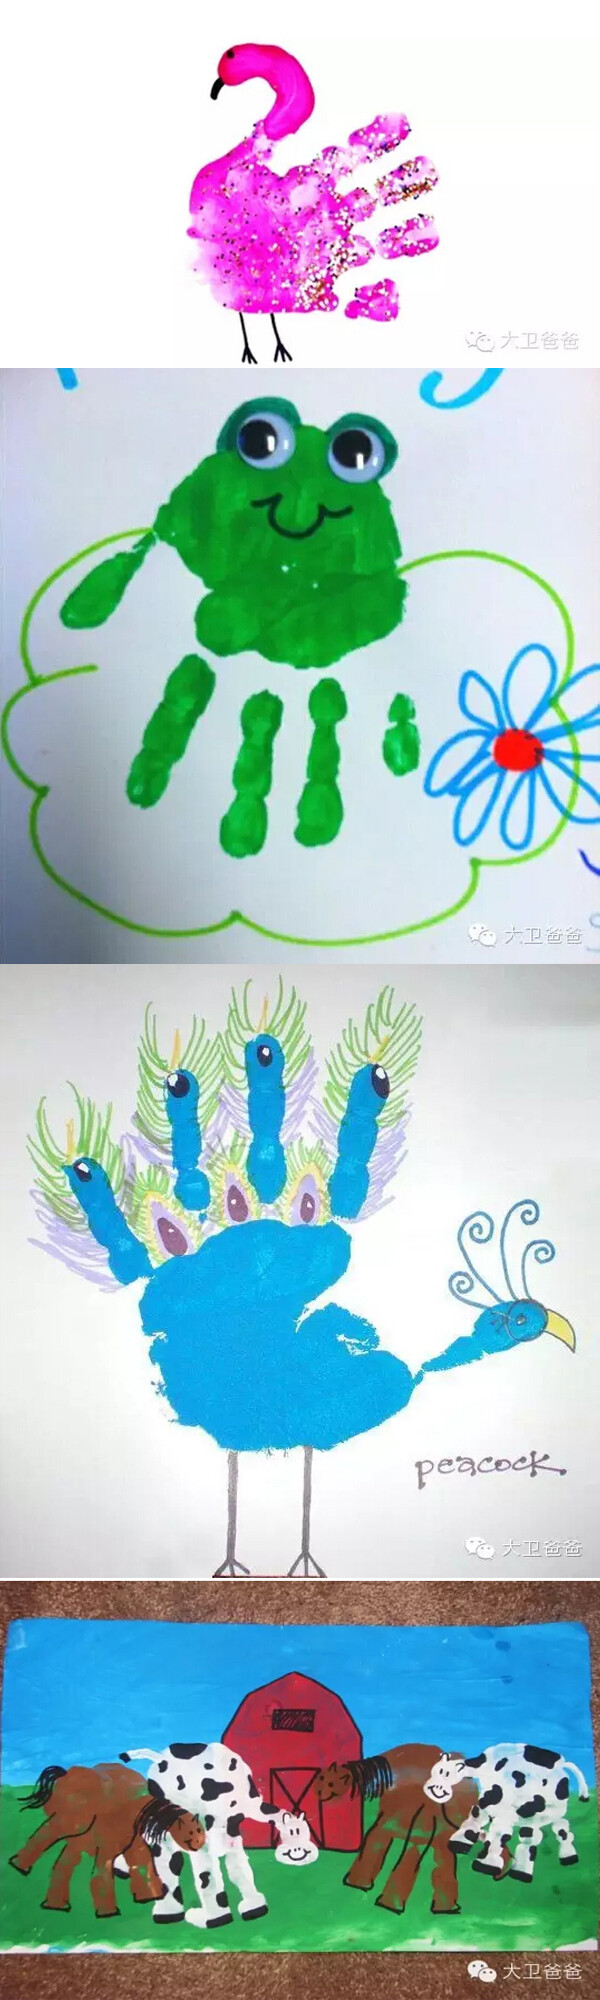 幼儿园小手小脚创意画图片